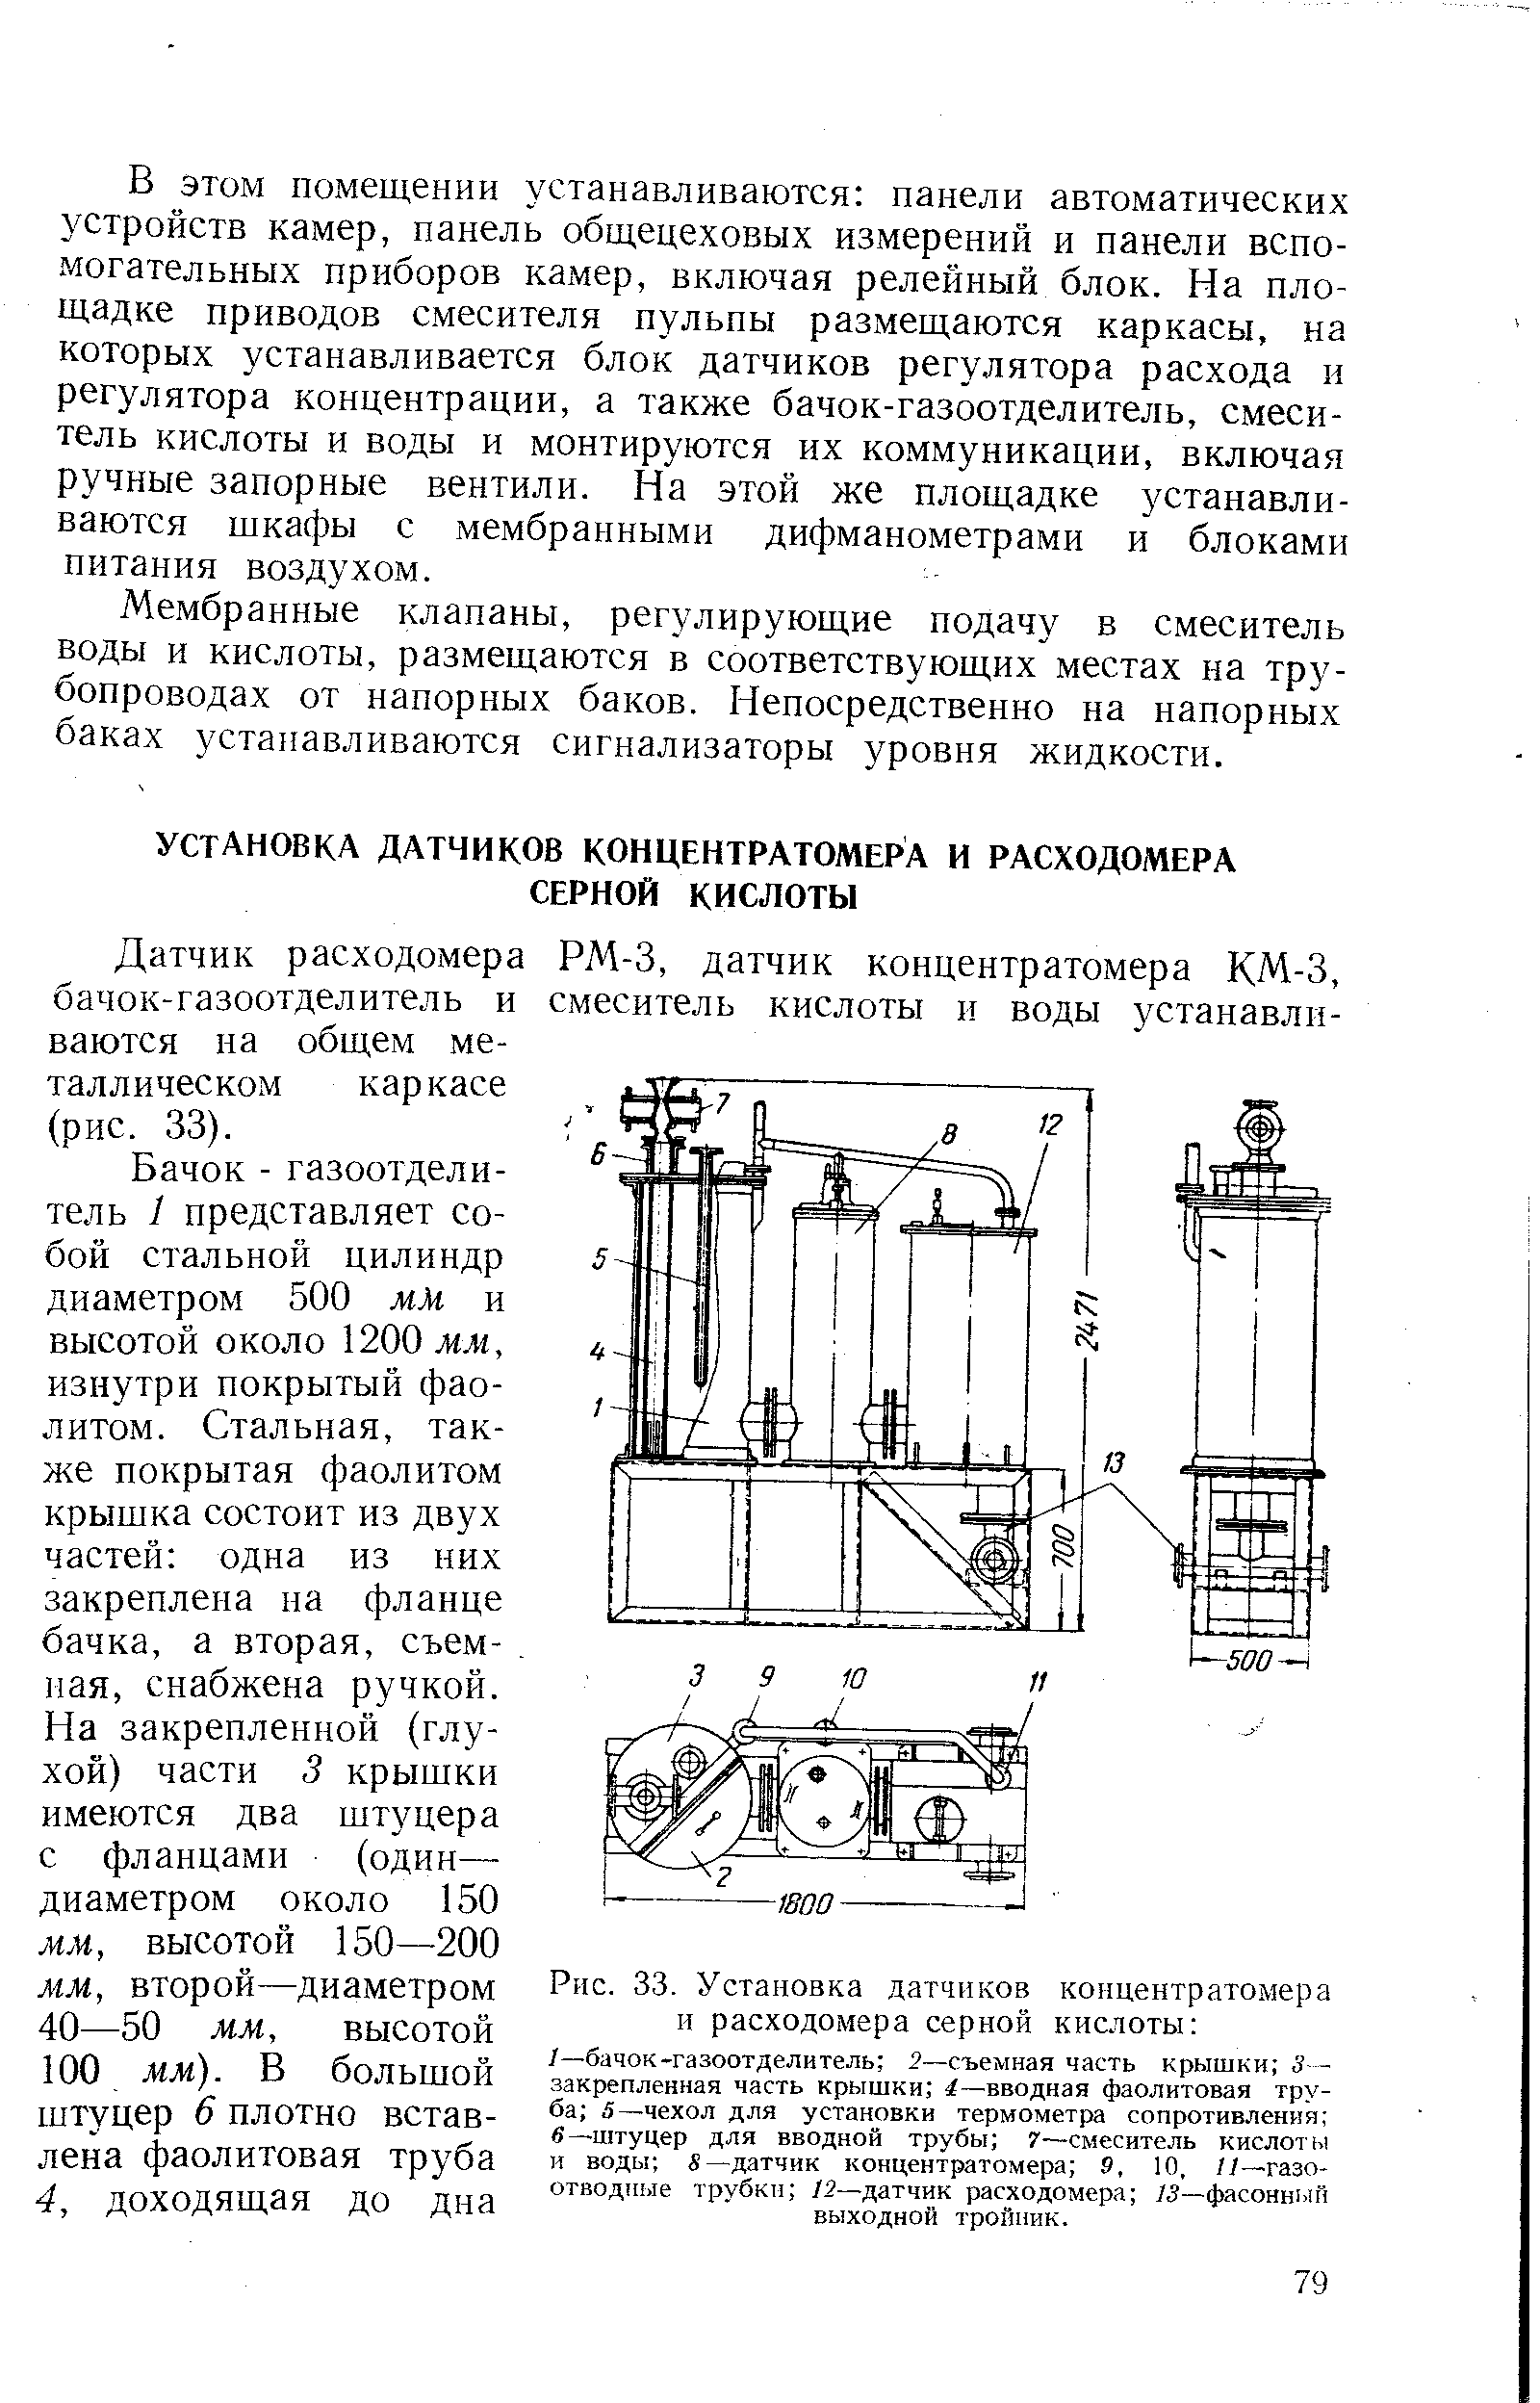 Рис. 33. Установка датчиков концентратомера и расходомера серной кислоты 
